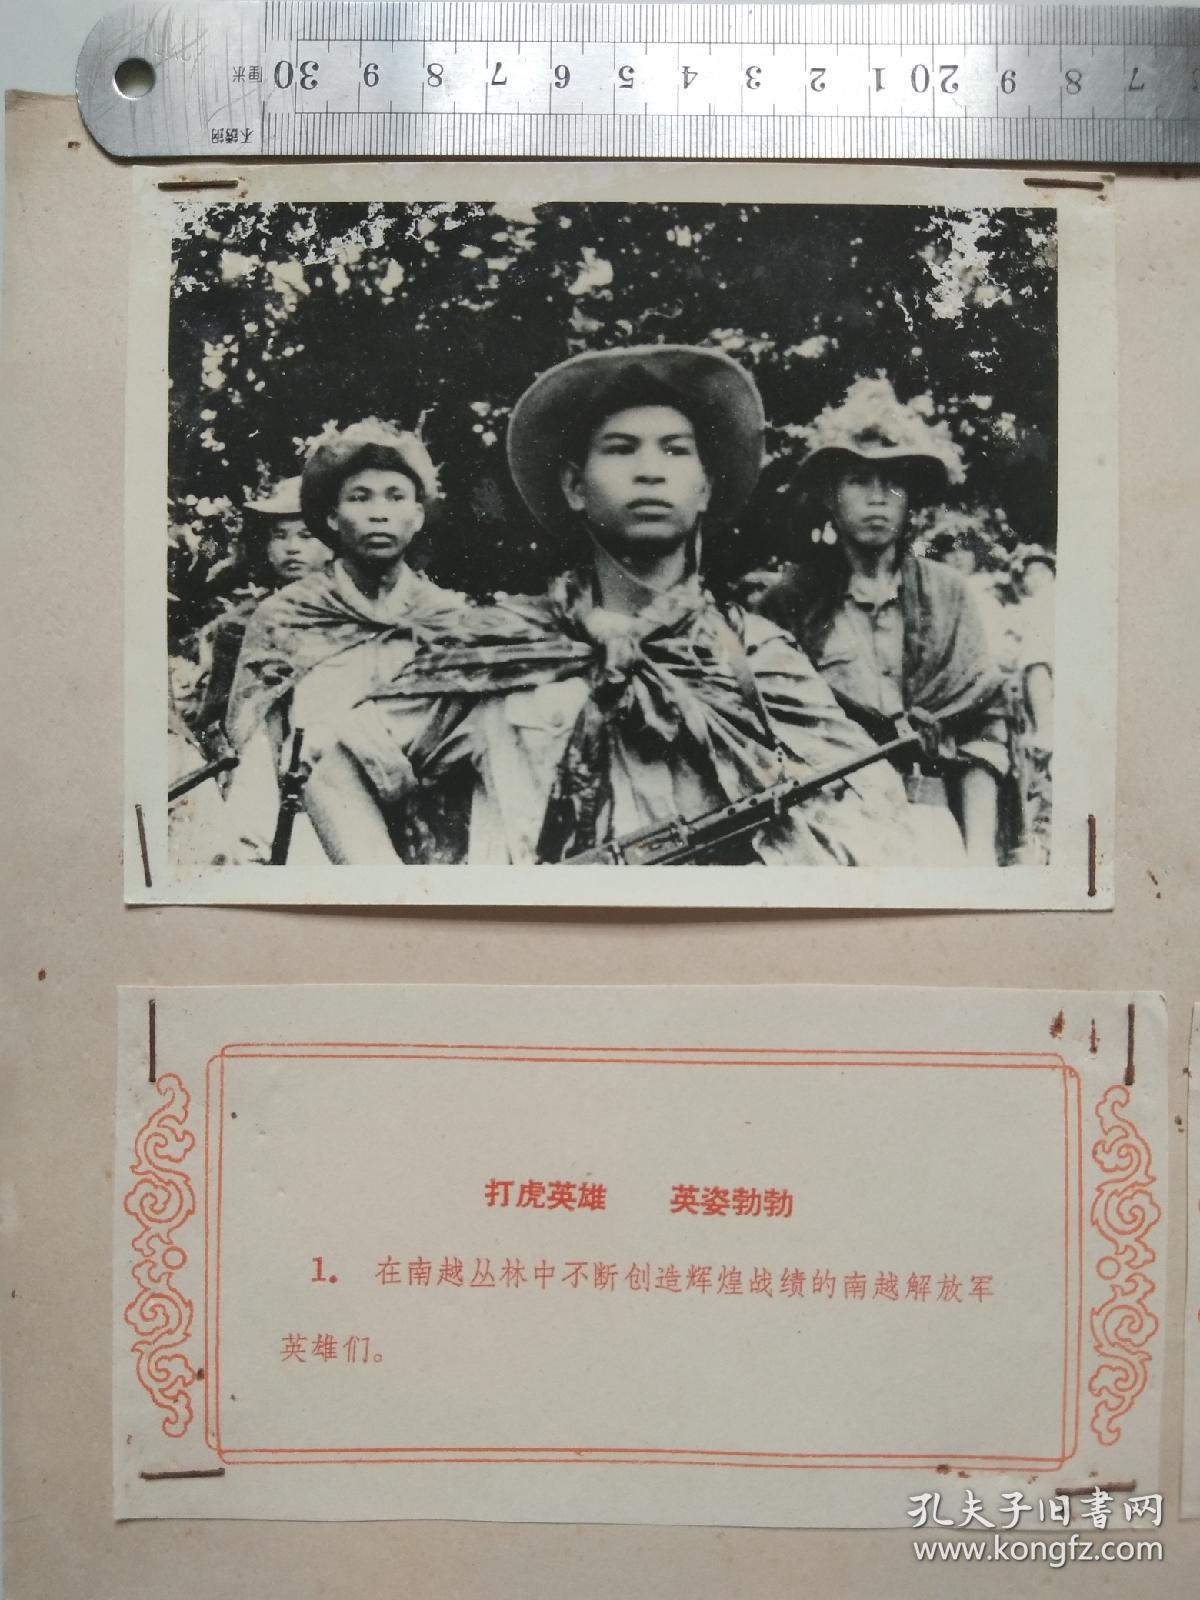 越南南方人民痛歼美国侵略者 新华社展览照片1.2  保真 只卖照片 不卖最后图的画！！！